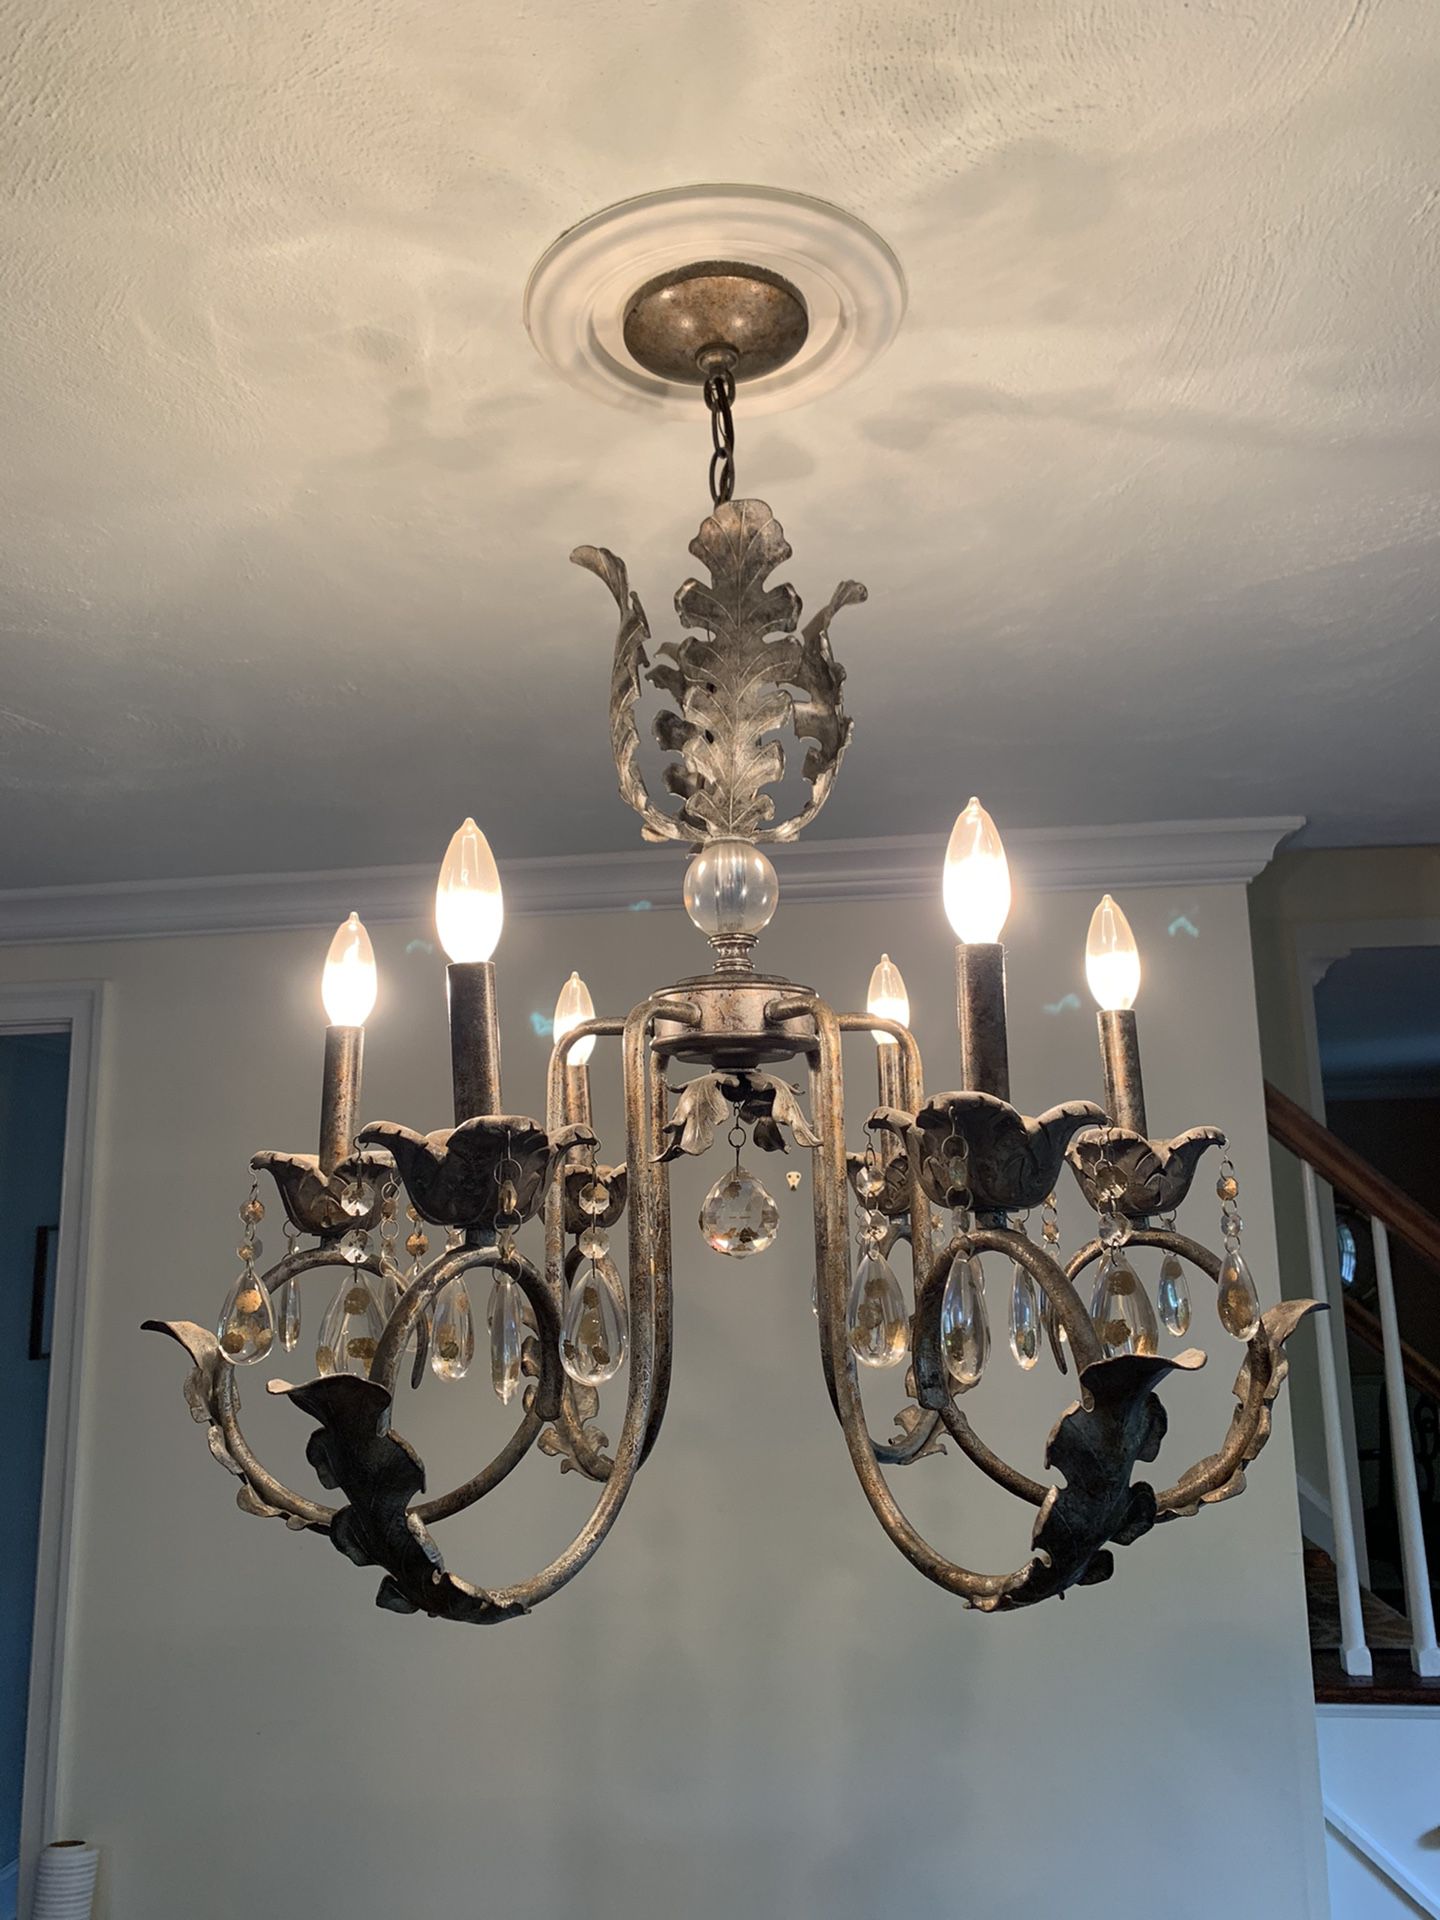 Beautiful 6 light chandelier